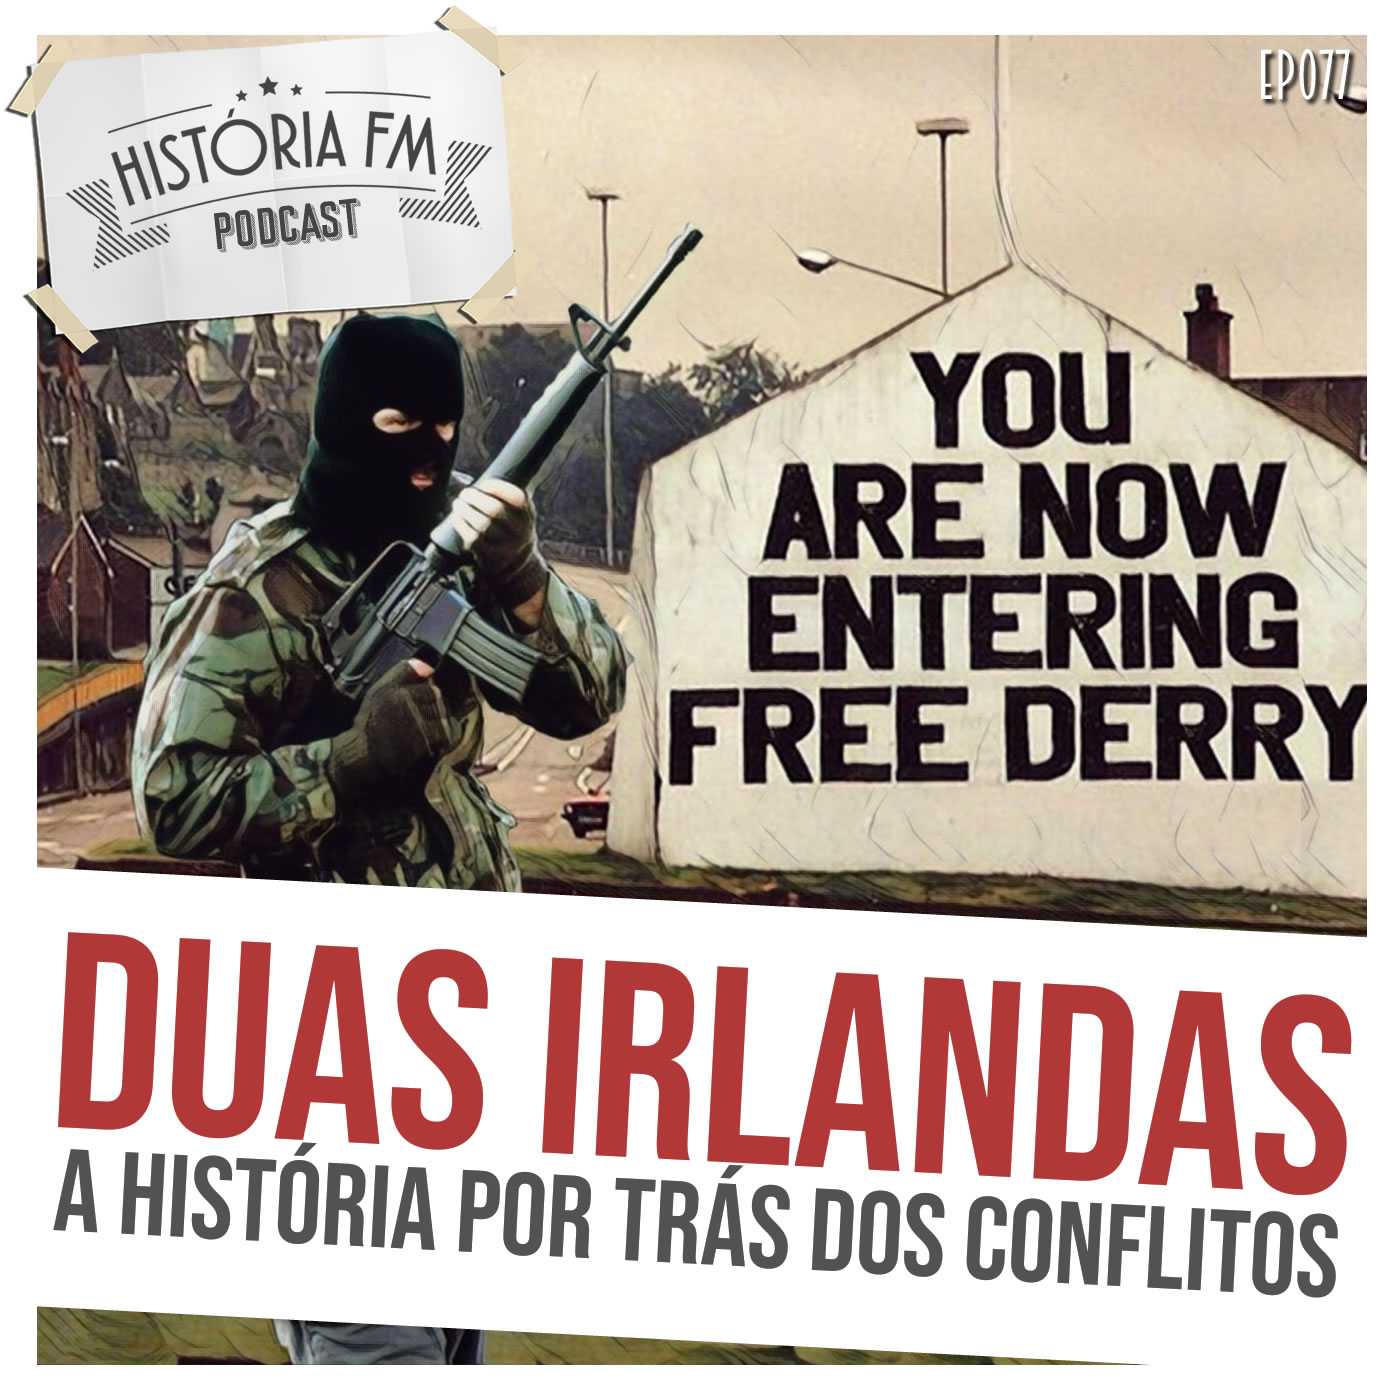 Duas Irlandas: a história por trás dos conflitos